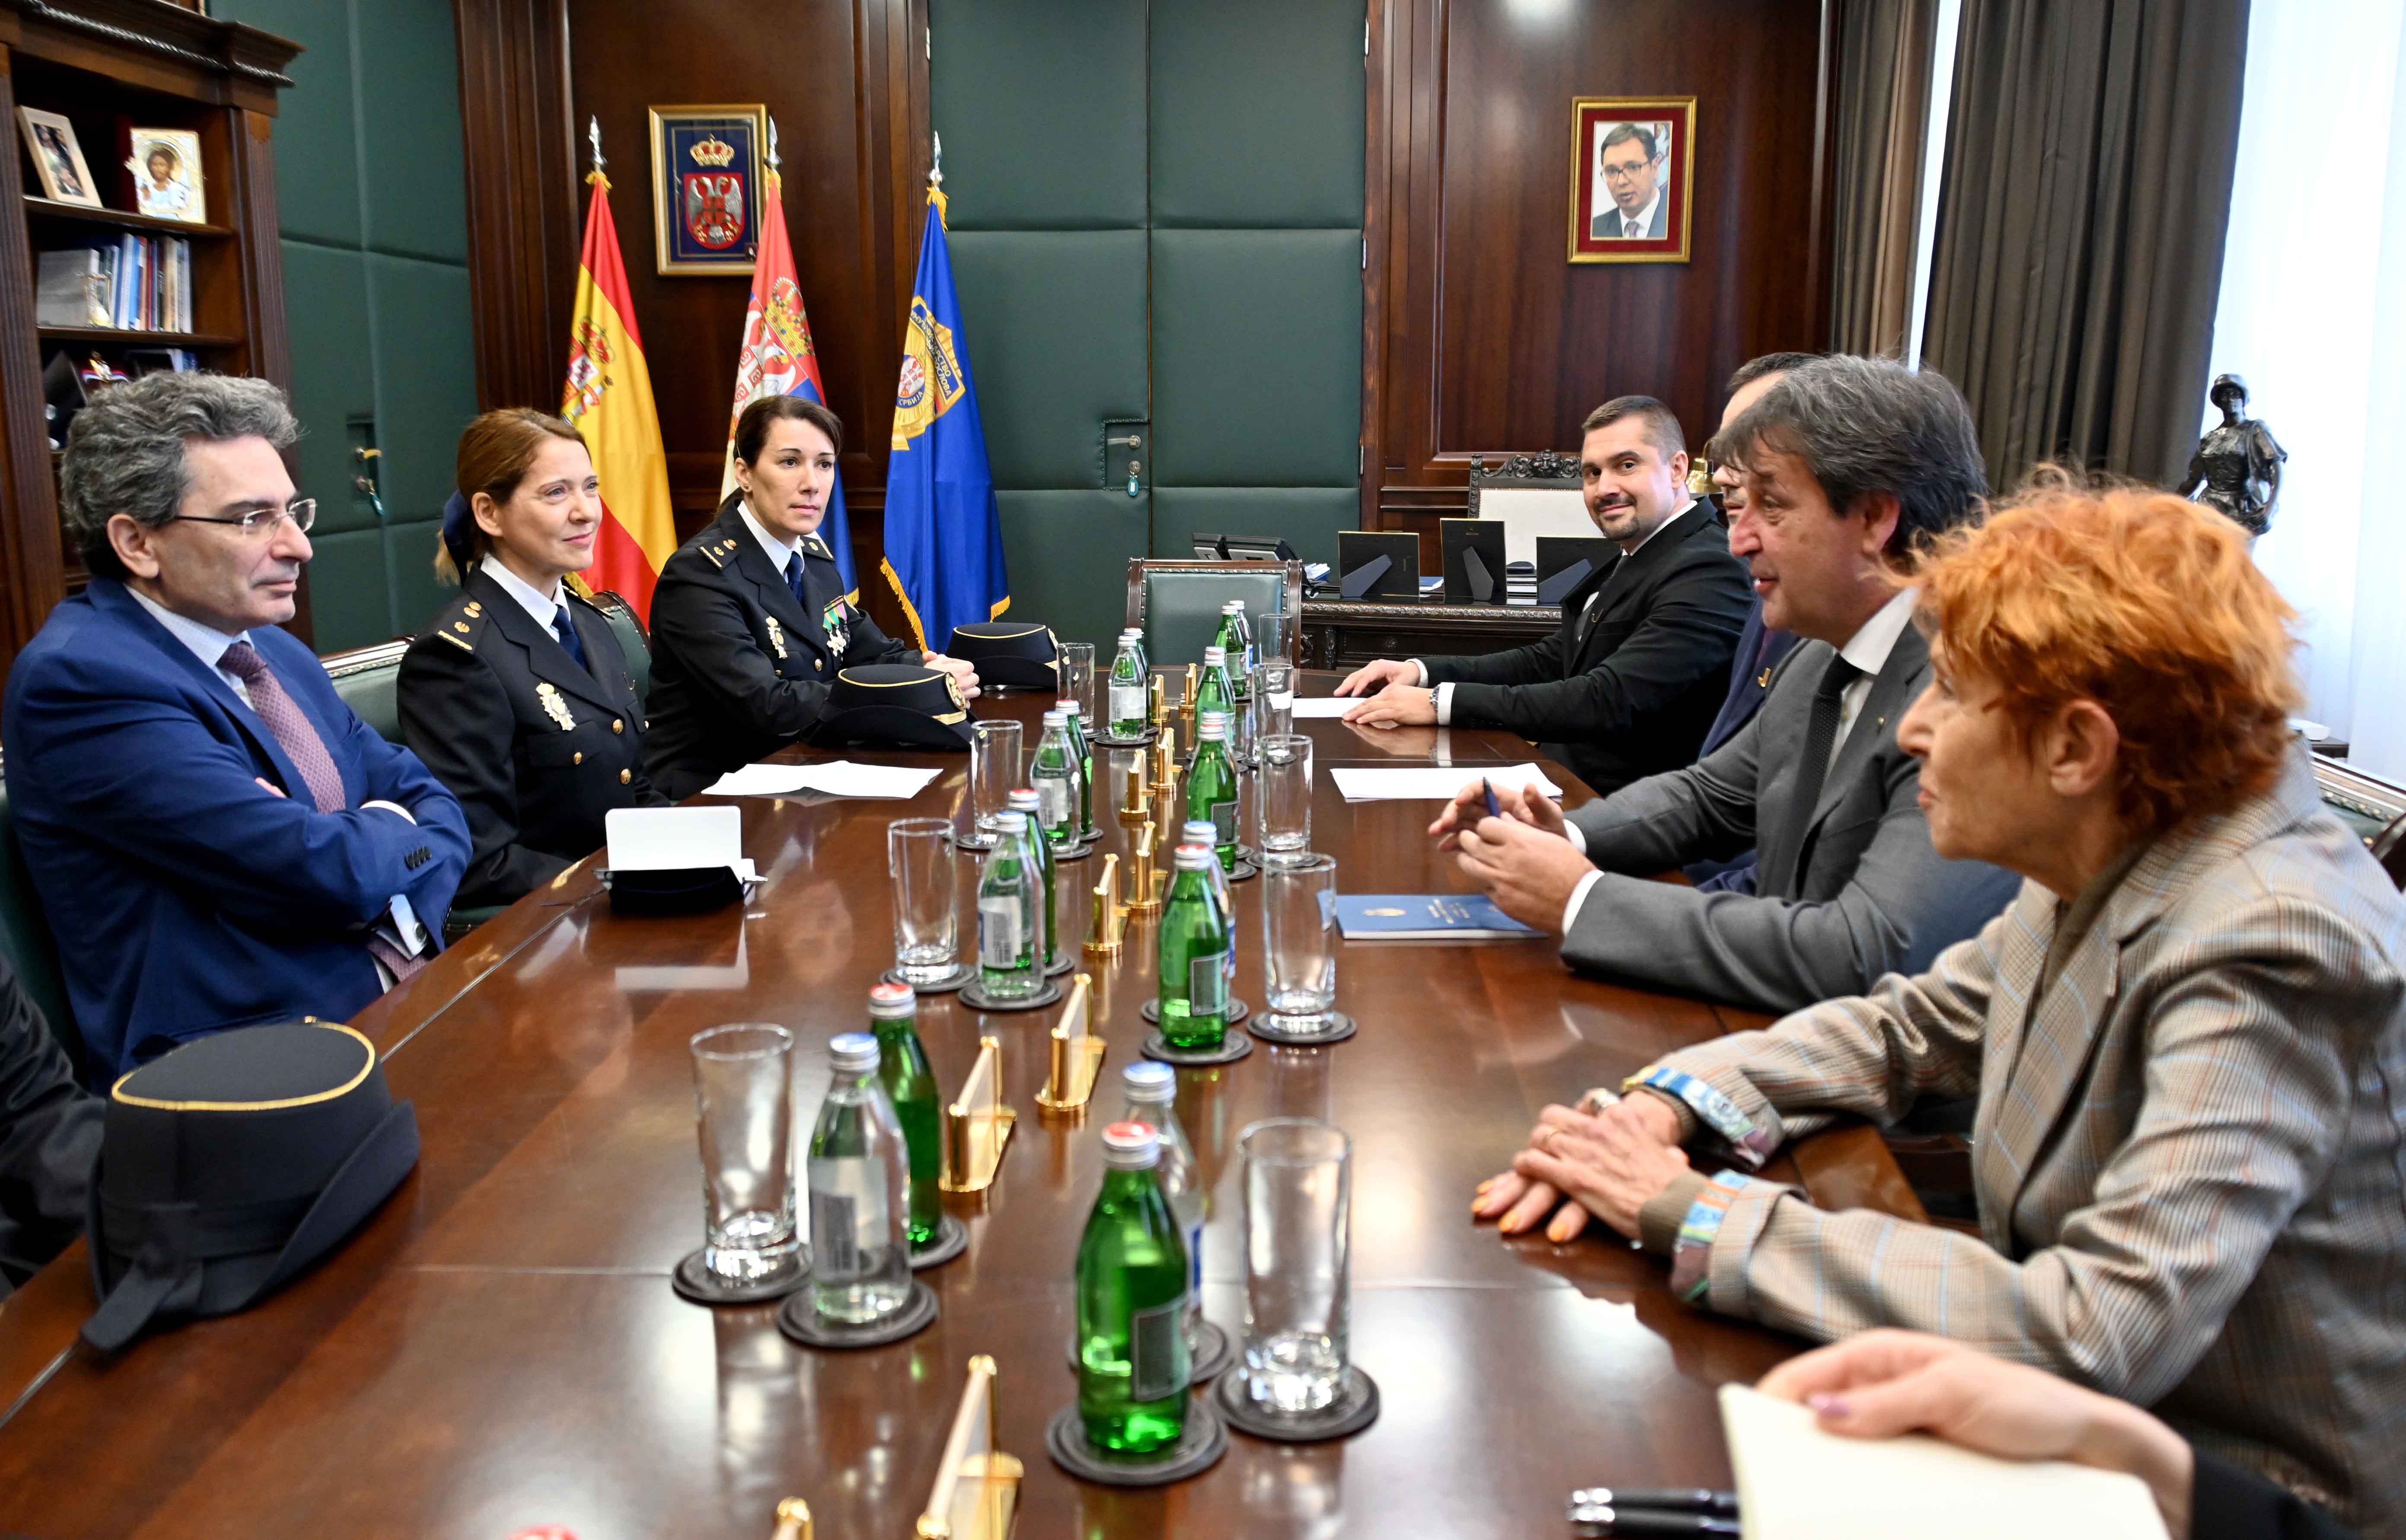 Uručena odlikovanja policijskim službenicima Kralјevine Španije i Republike Srbije